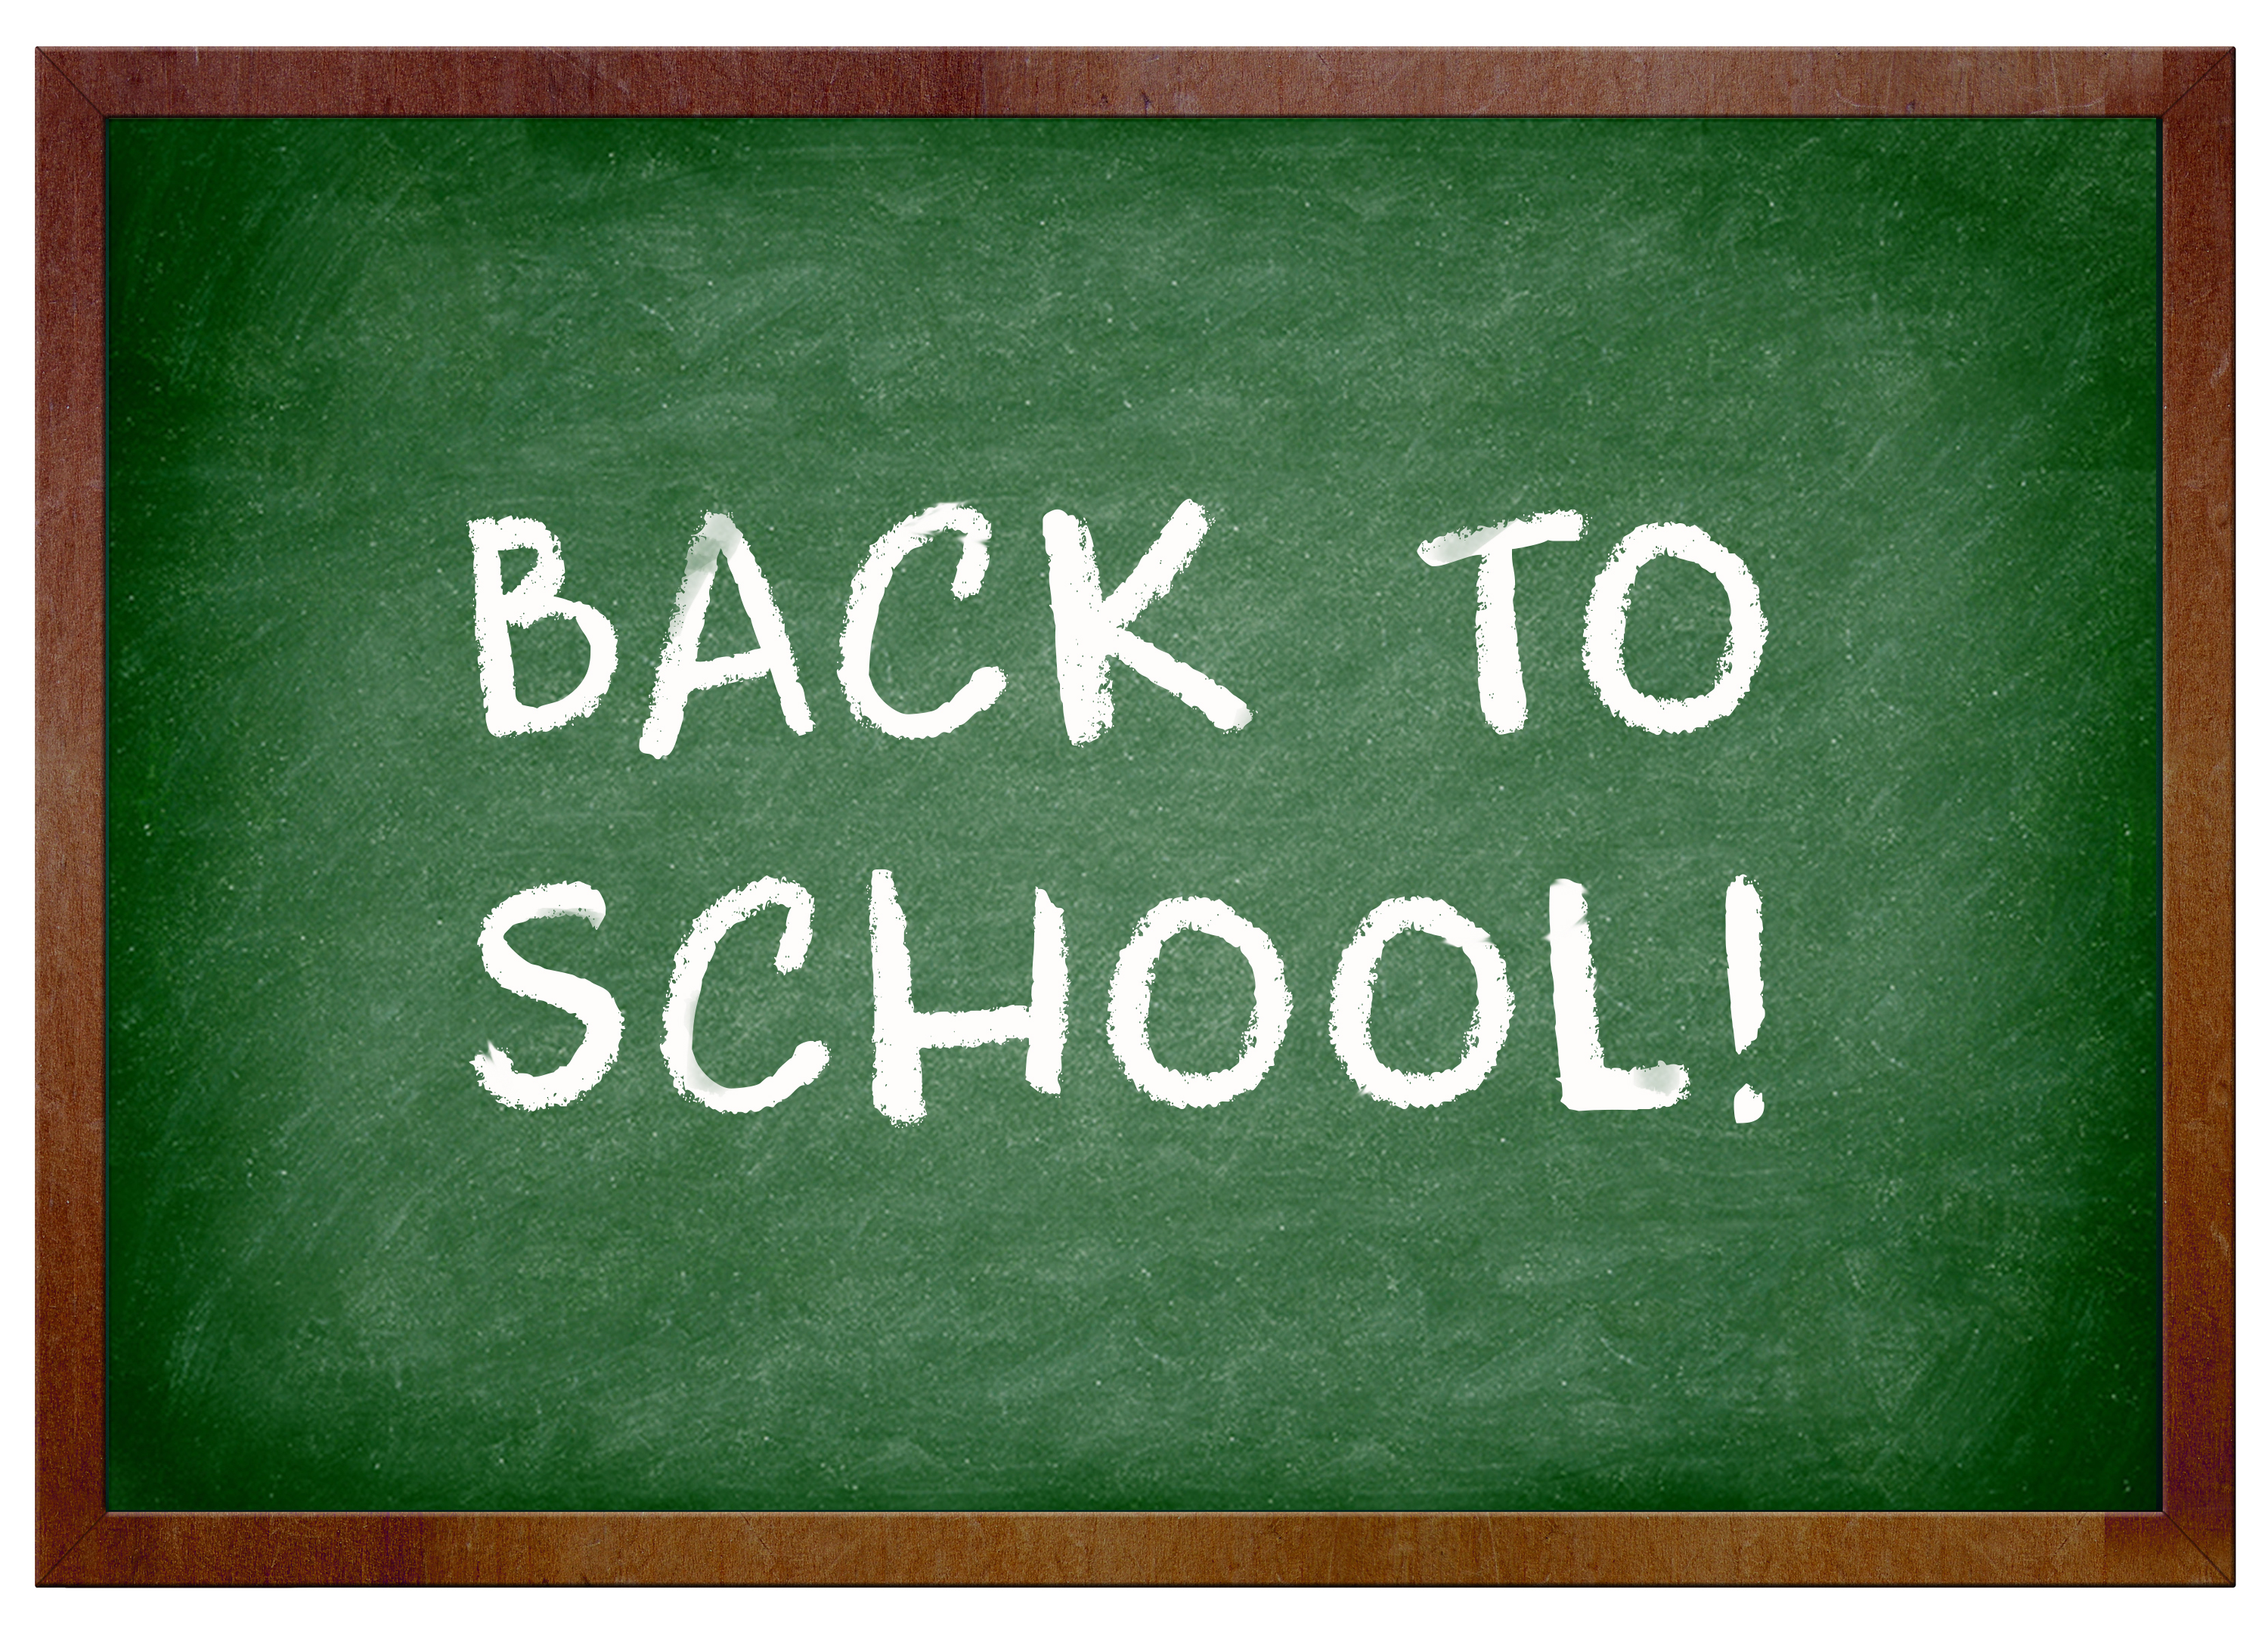 Back to school 1. Back to School. Back to School картинки. Back to School Board. School Chalkboard.